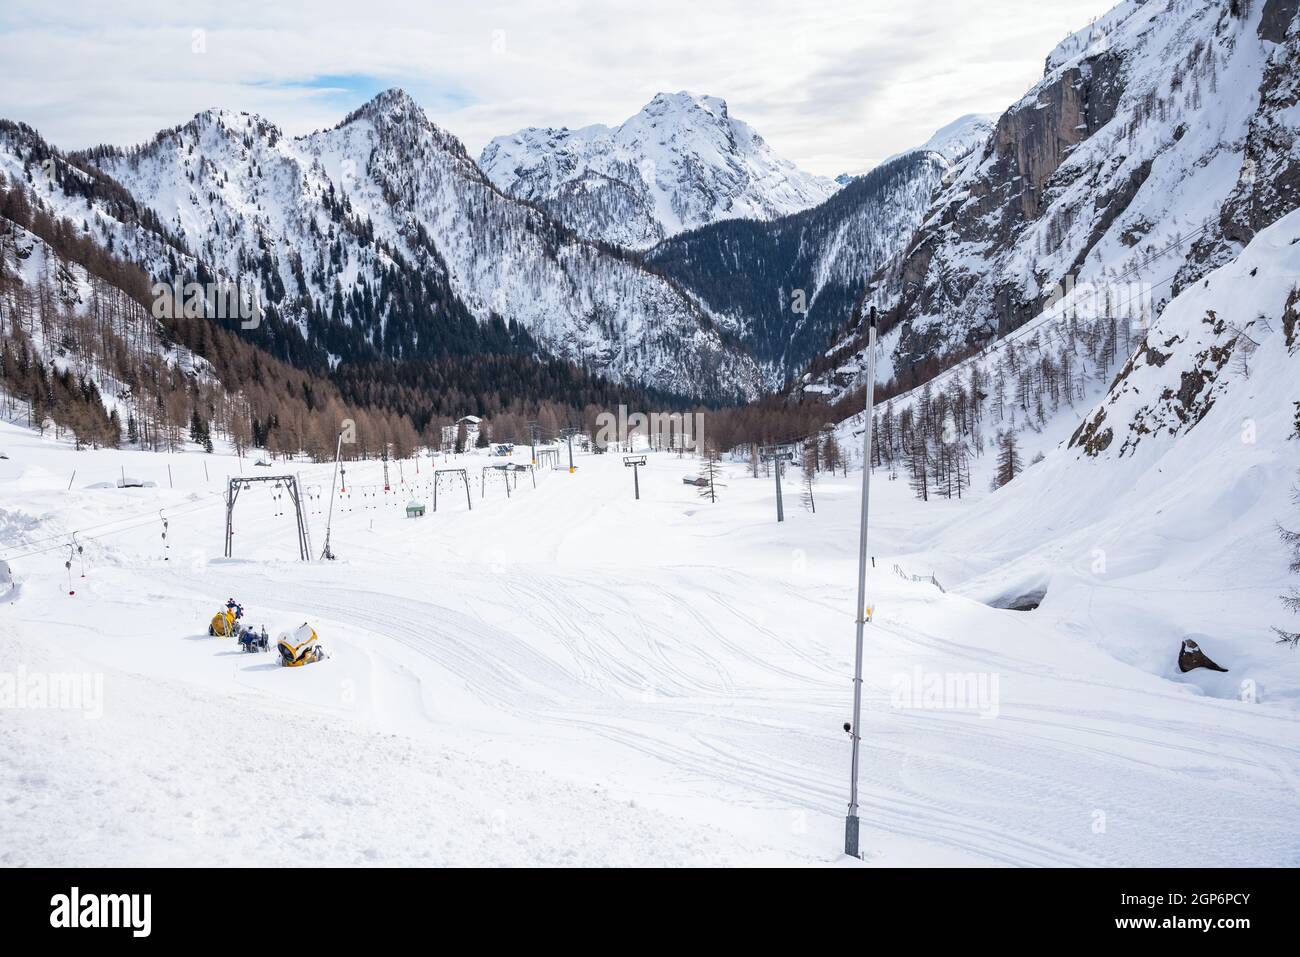 Desiertas pistas de esquí rodeadas de majestuosos picos nevados en los Alpes en invierno Foto de stock